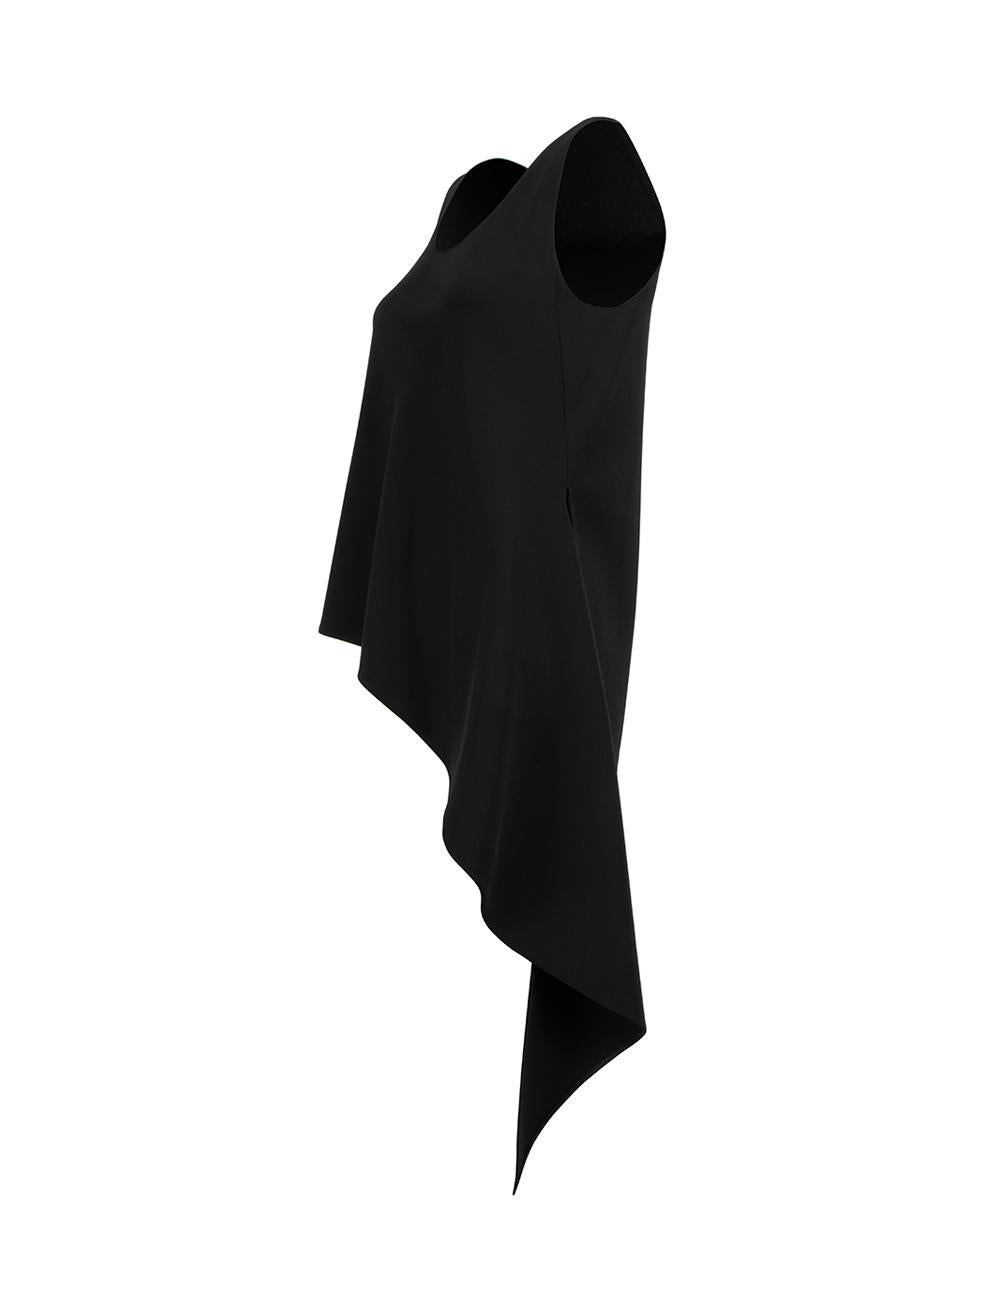 Balenciaga Women's 2014 Black Asymmetric Droopy Tail Tank Top 1